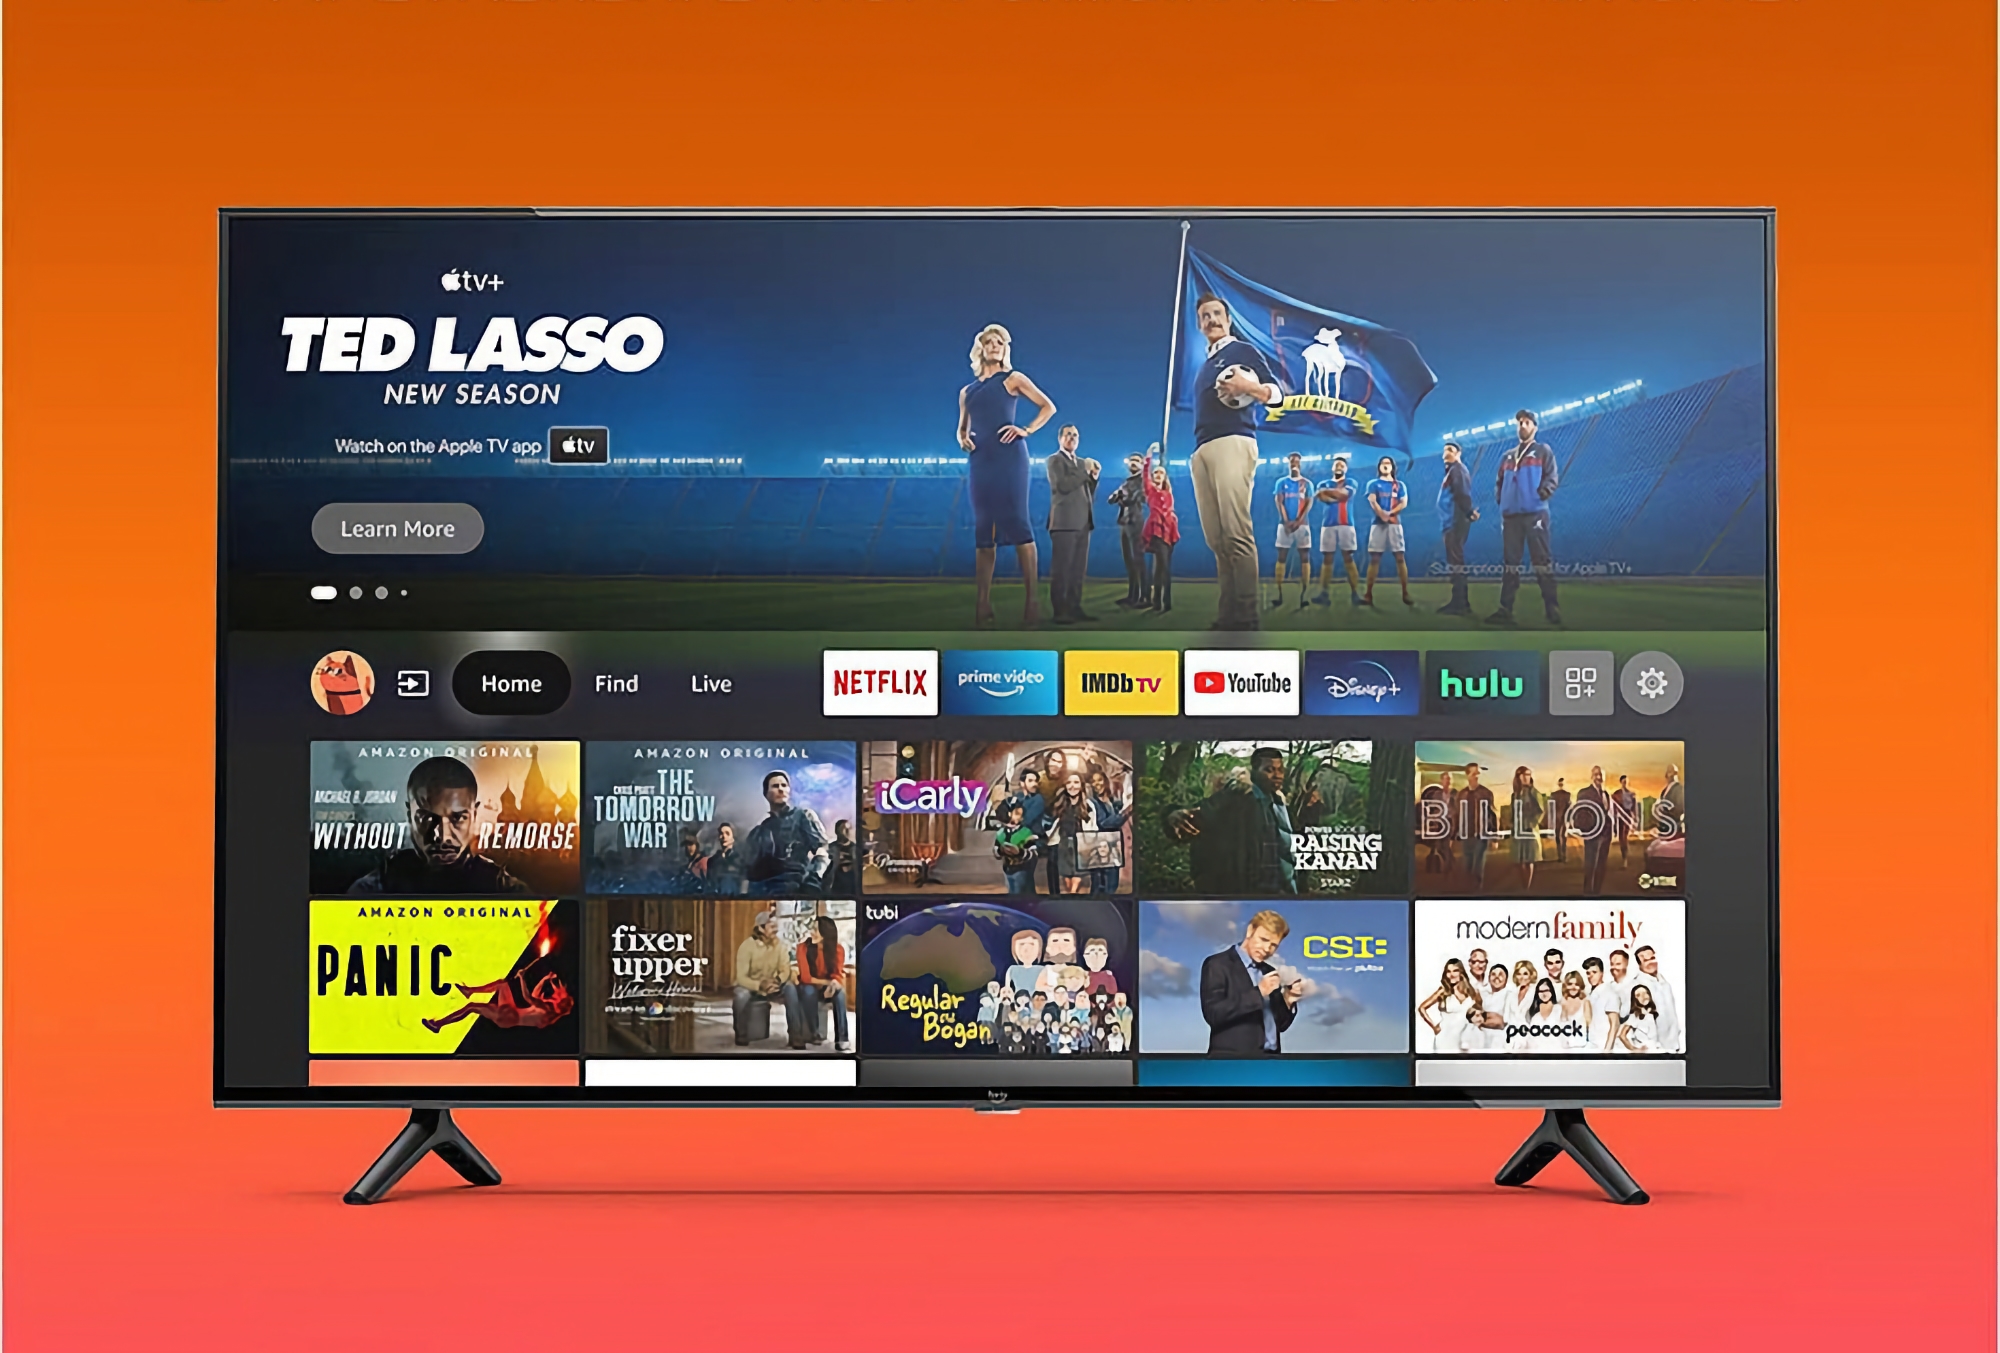 Dagens erbjudande: Amazon Fire TV Omni med 50-tums 4K-skärm och Alexa röstassistent tillgänglig med en rabatt på $ 226